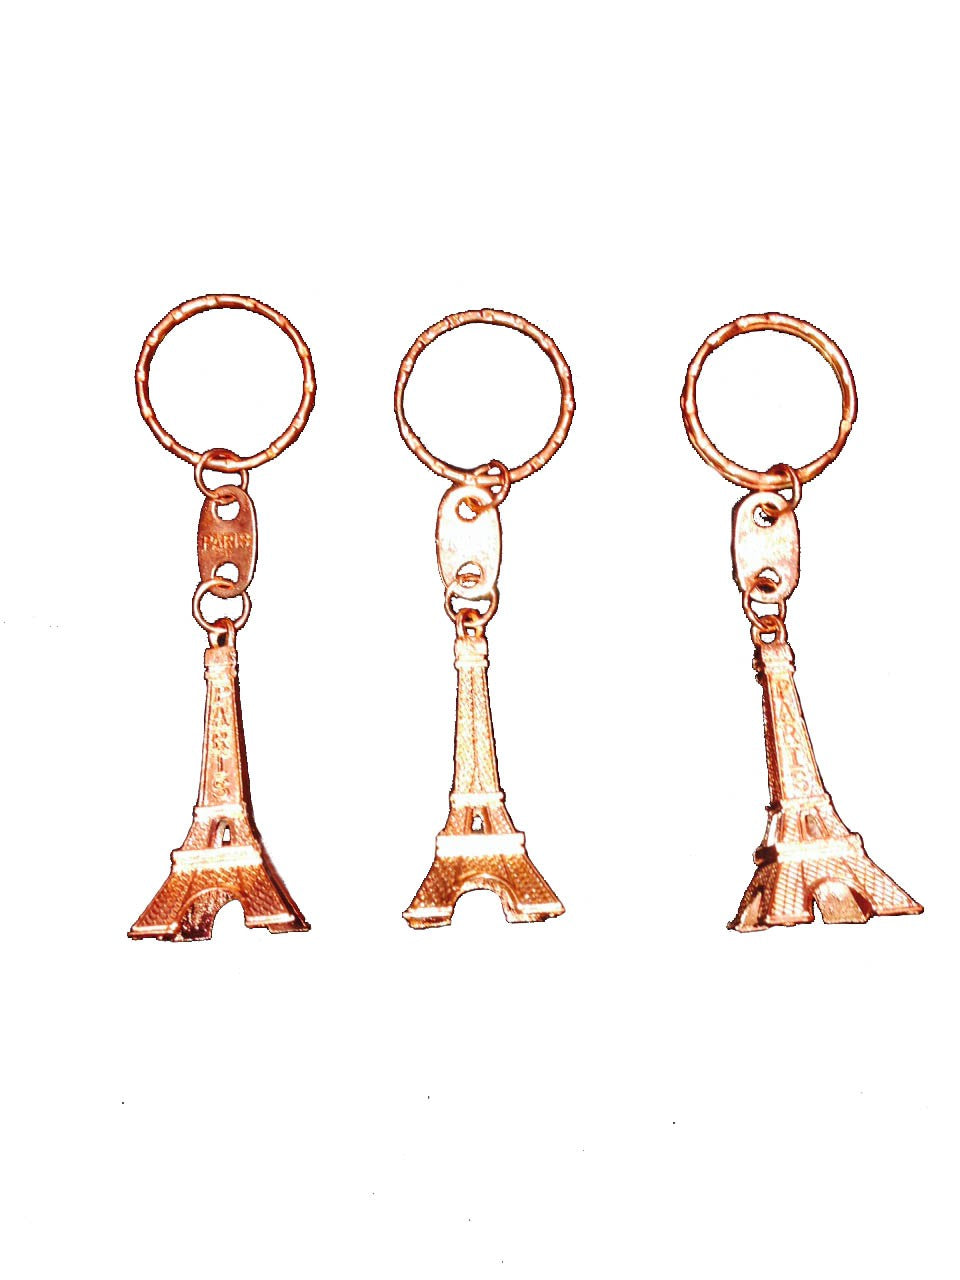 Porte clés Tour Eiffel couleur cuivre